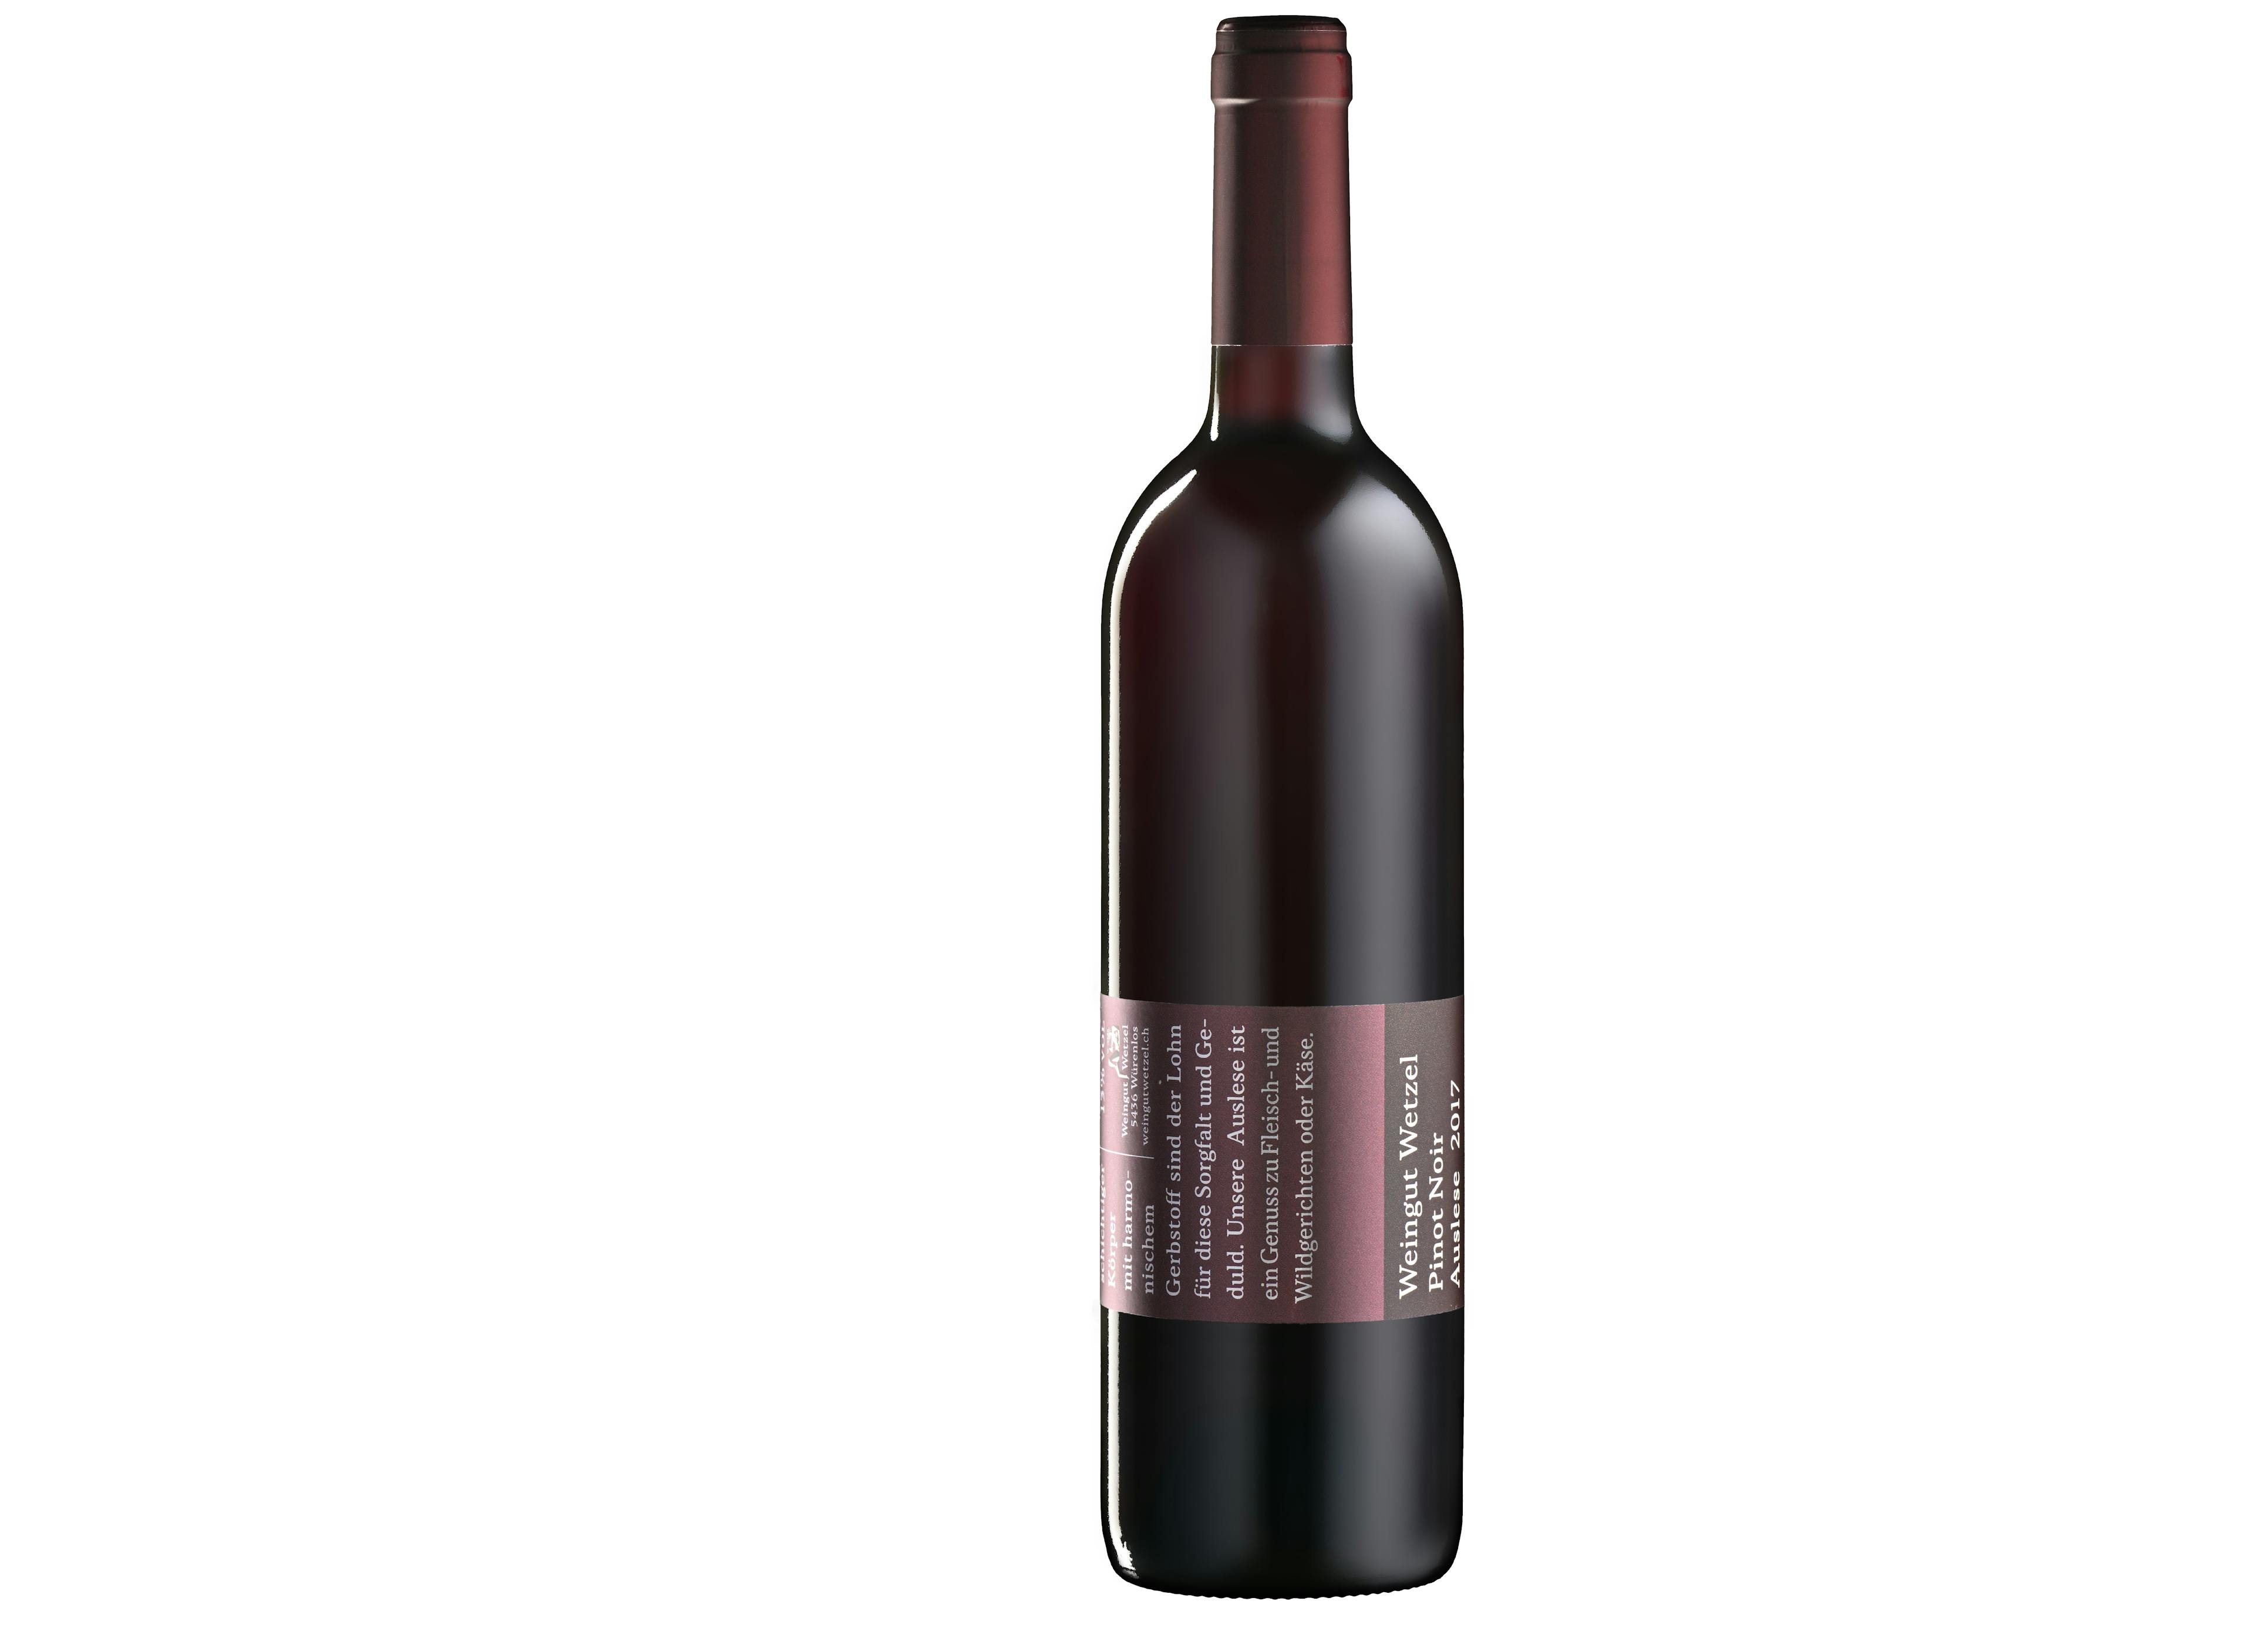 Domaine de la sélection Wetzel Pinot Noir, produit artisanal en vente directe en Suisse